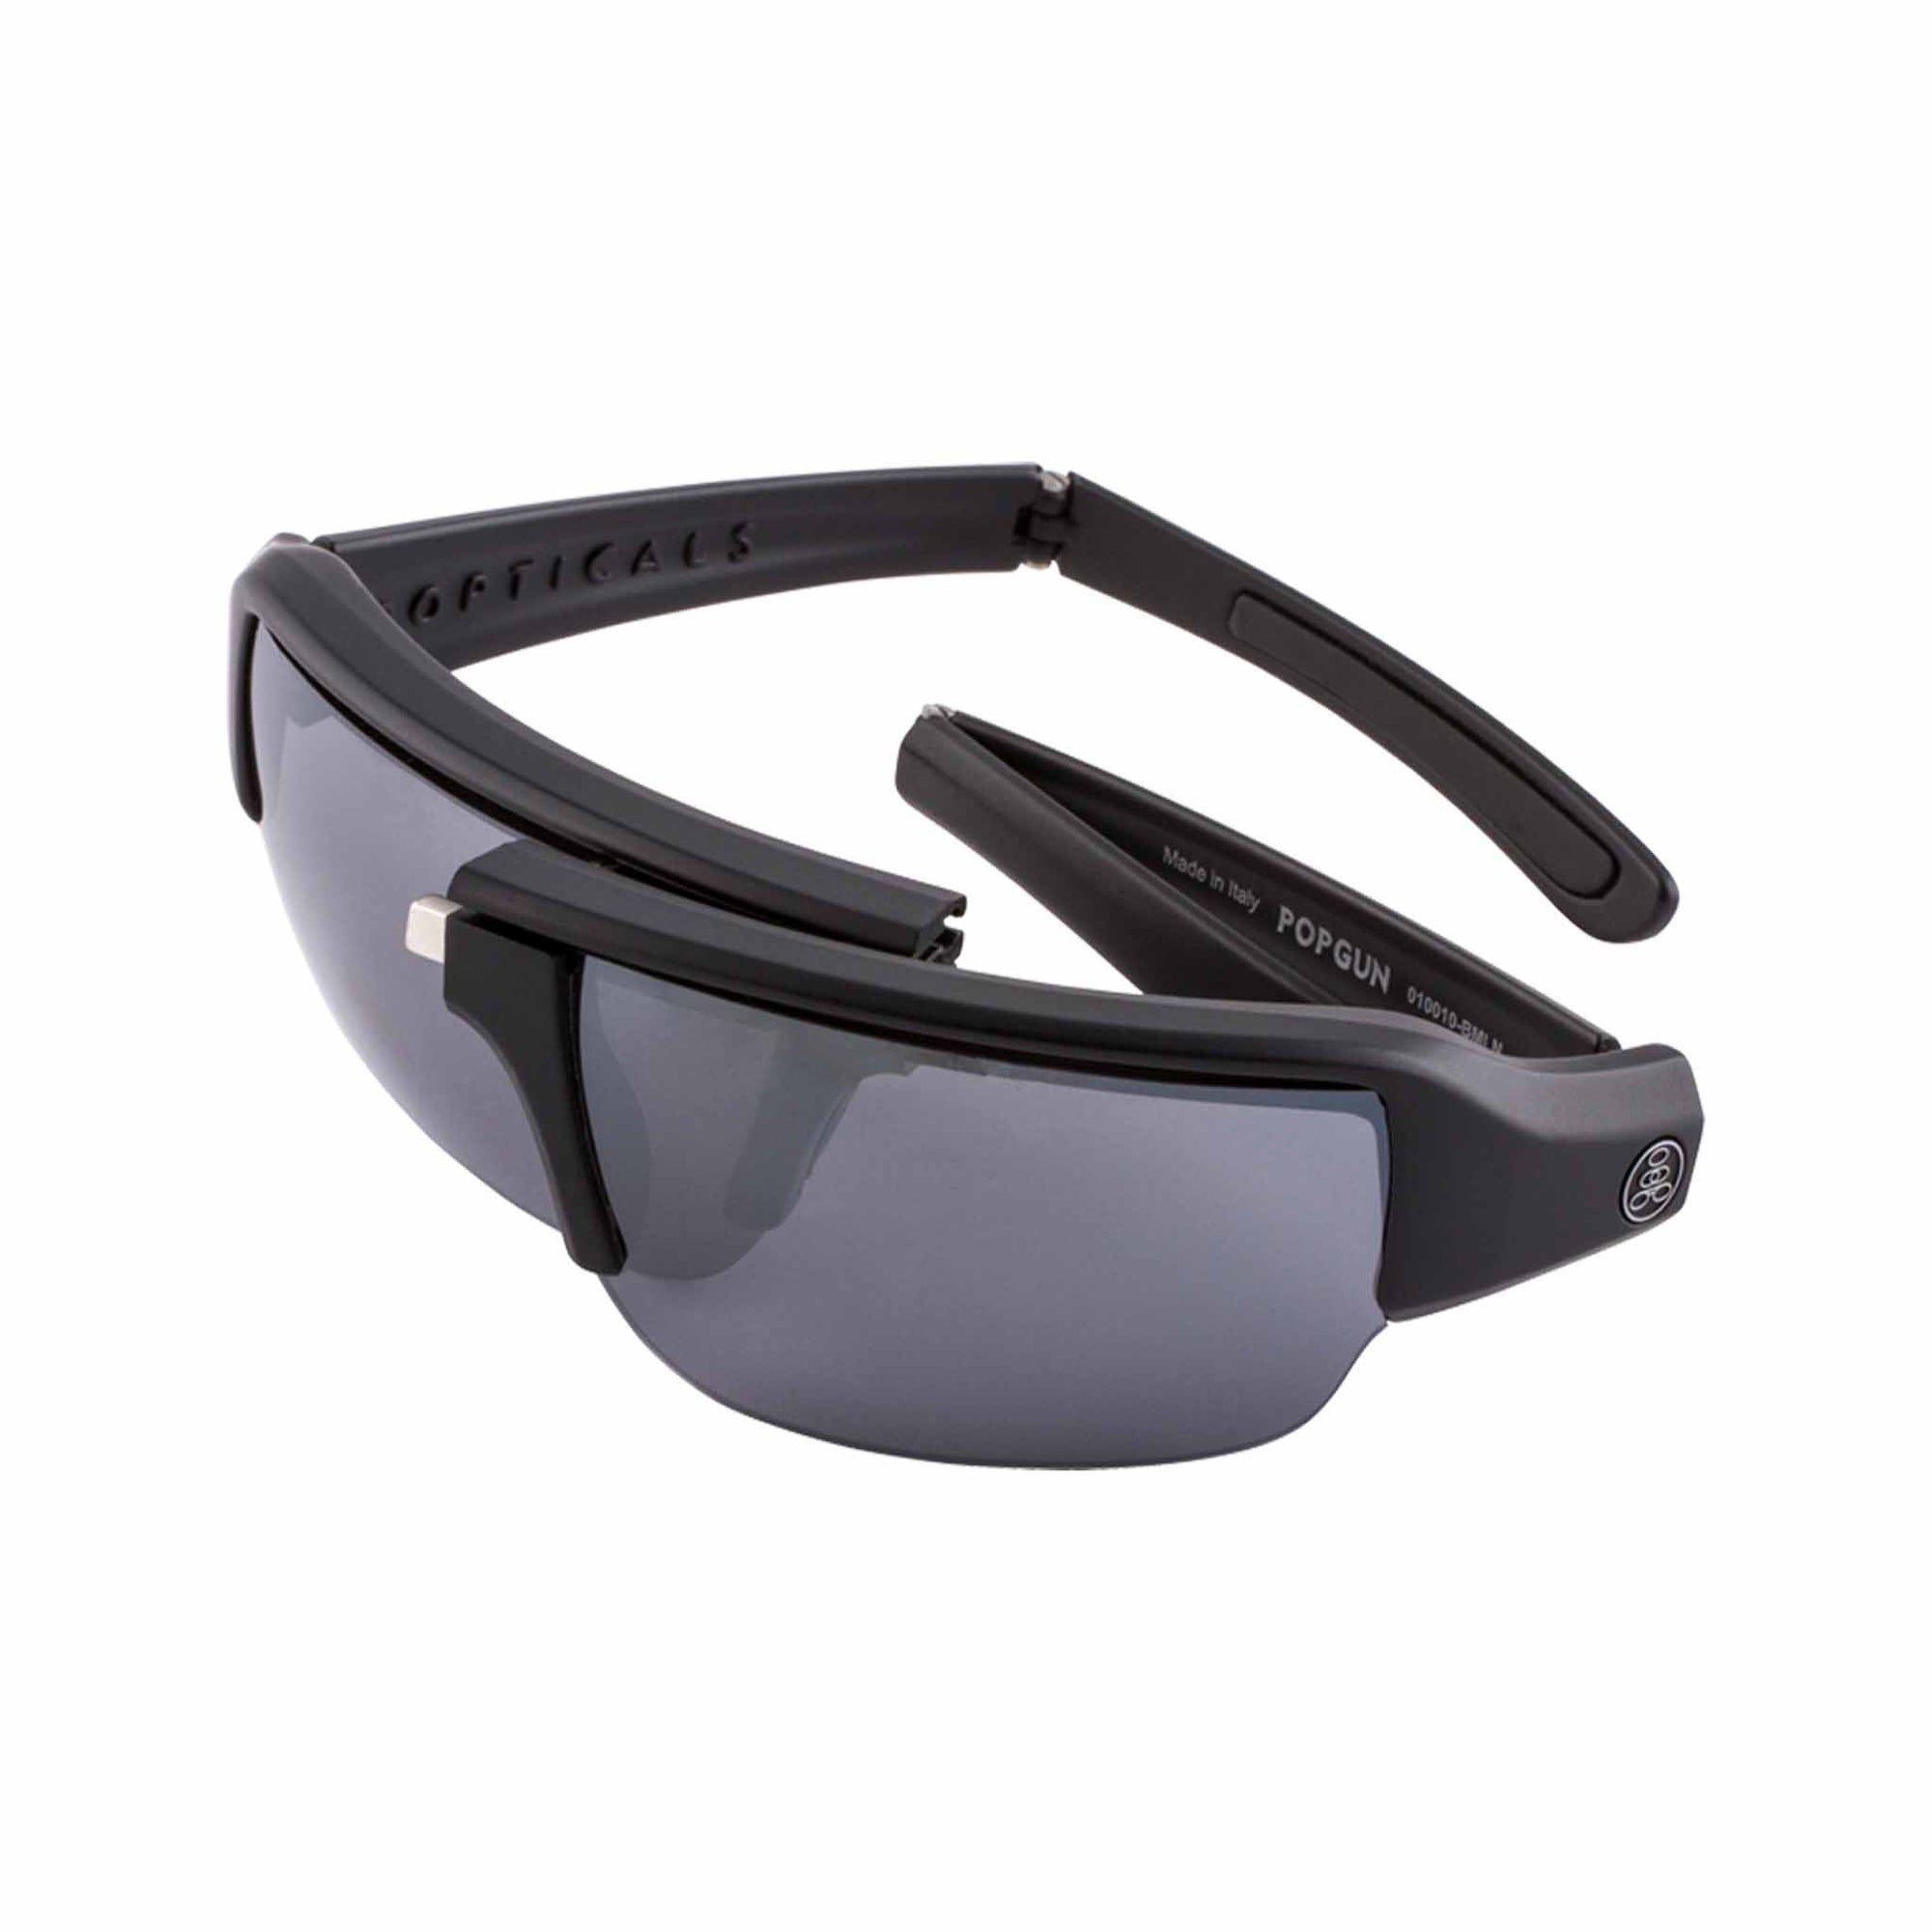 Popticals, Premium Compact Sunglasses, PopGun, 010010-BMLN, Polarized Sunglasses, Matte Black Frame, Gray Lenses w/Silver Mirror Finish, Spider View